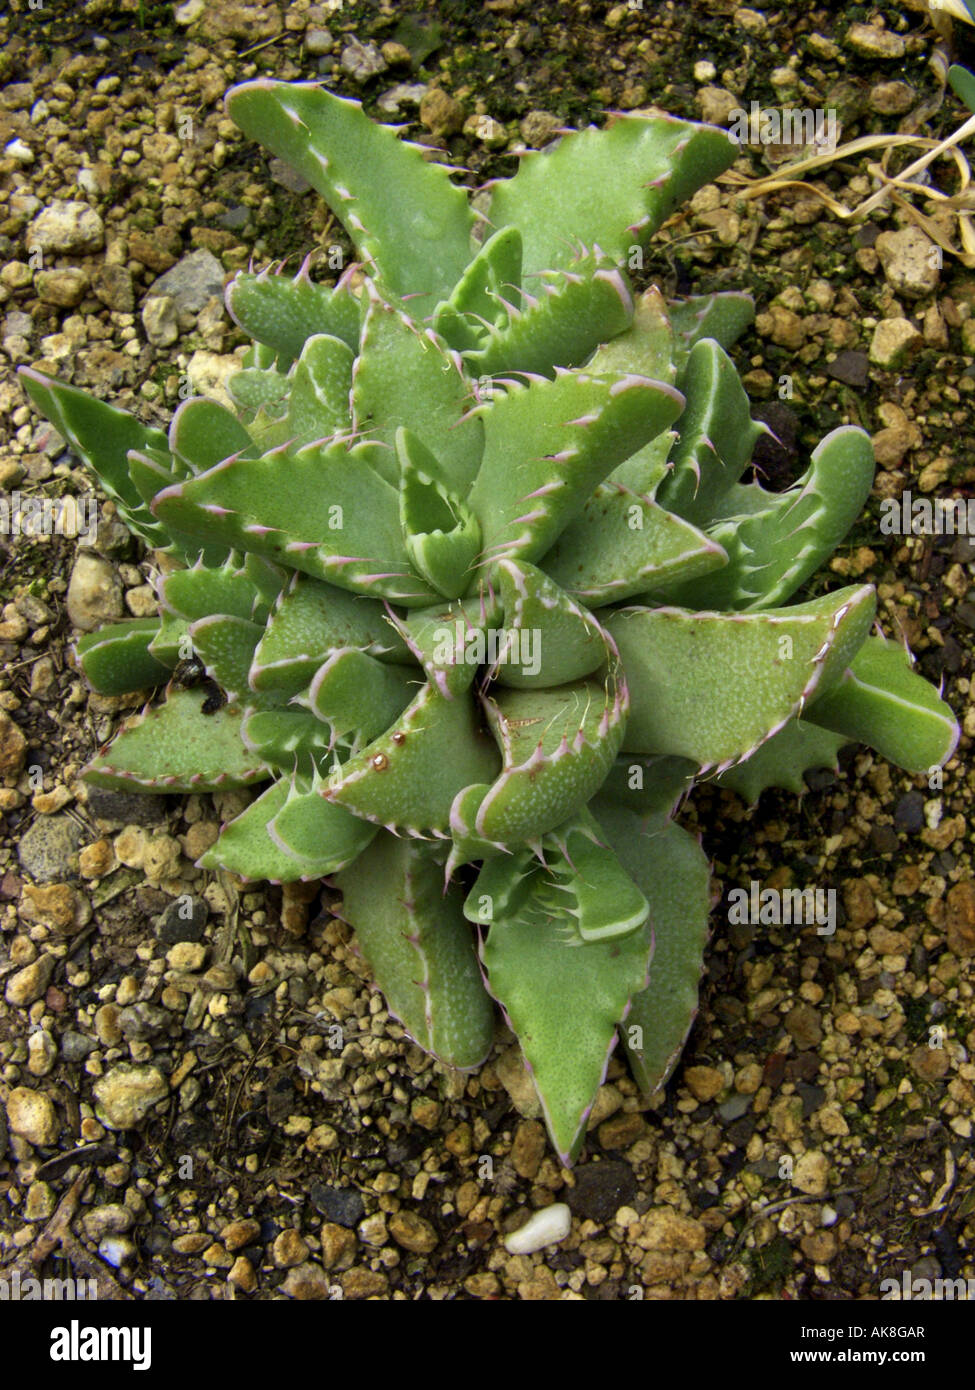 Faucaria (Faucaria felina), single plant Stock Photo